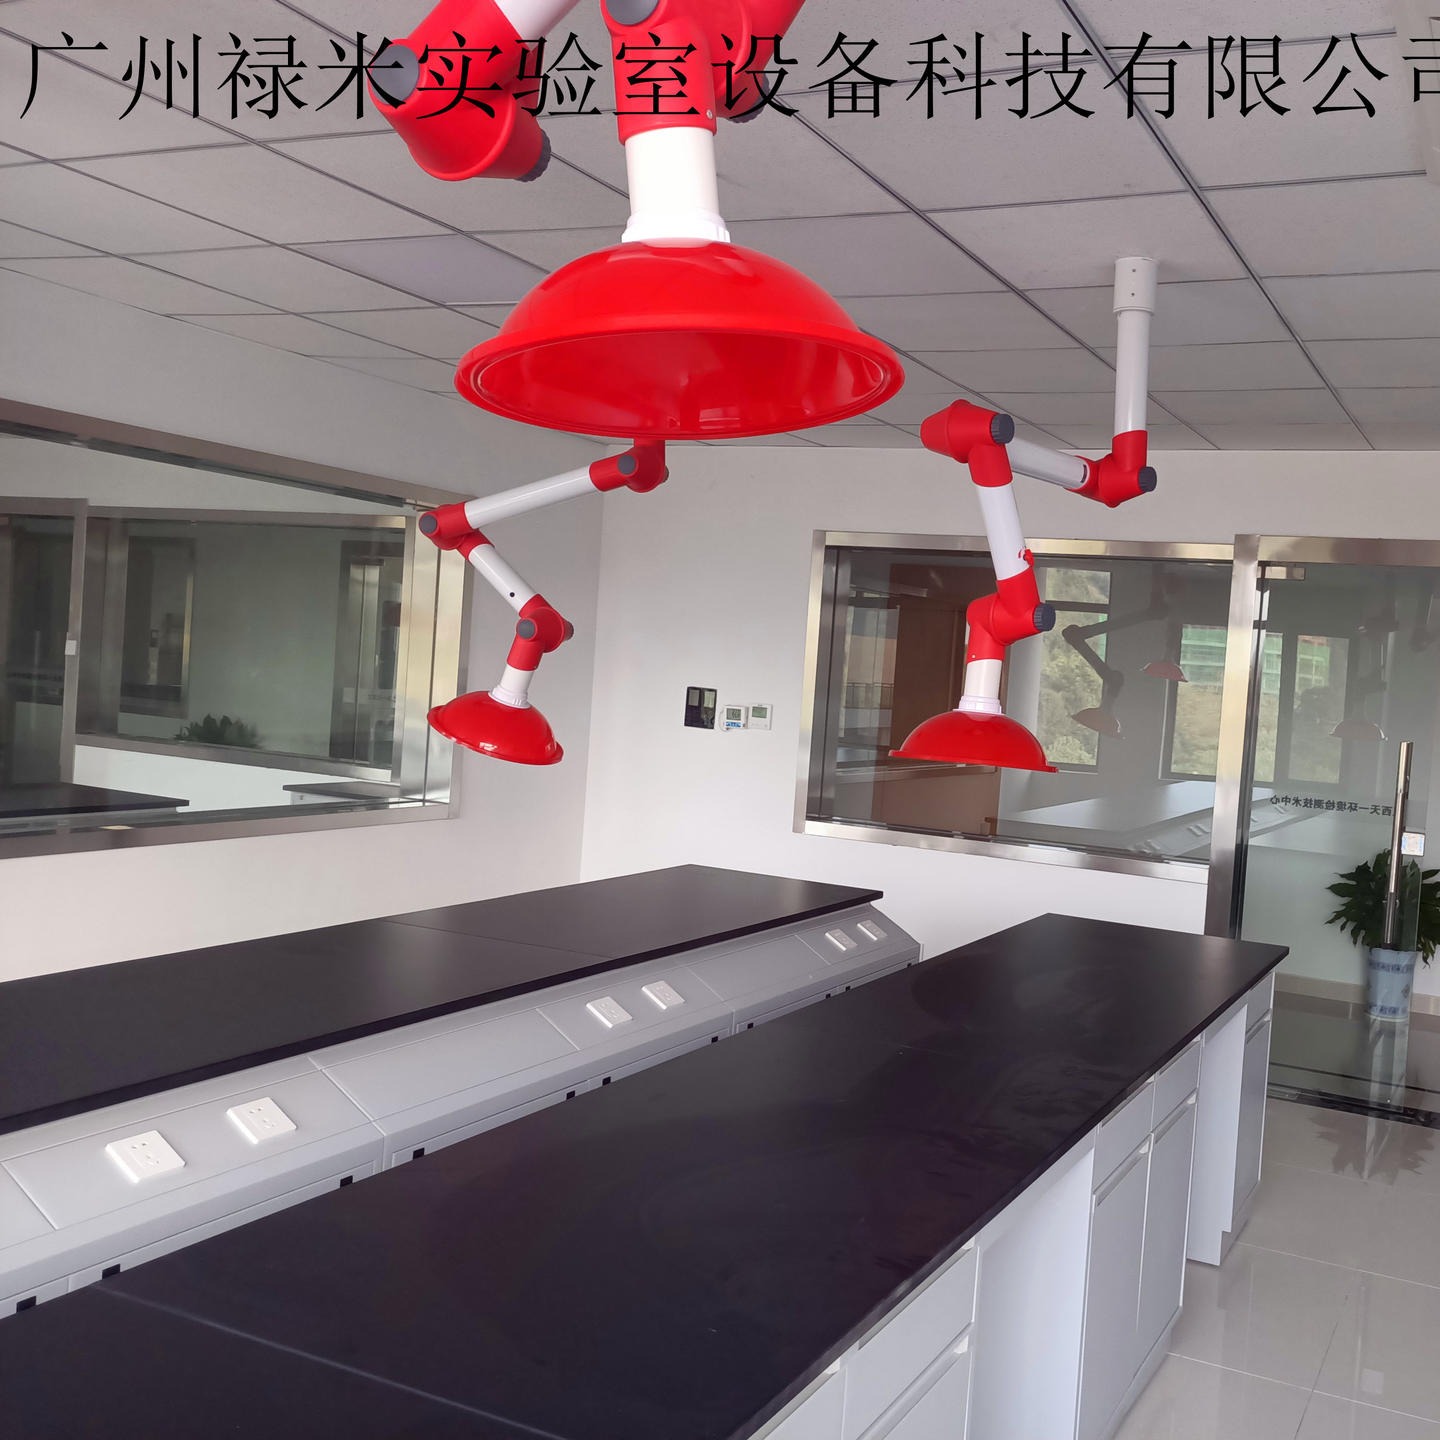 禄米实验室 全钢高温台生产厂家 高温台价格,广州禄米高温台定制LUMI-YQT9451